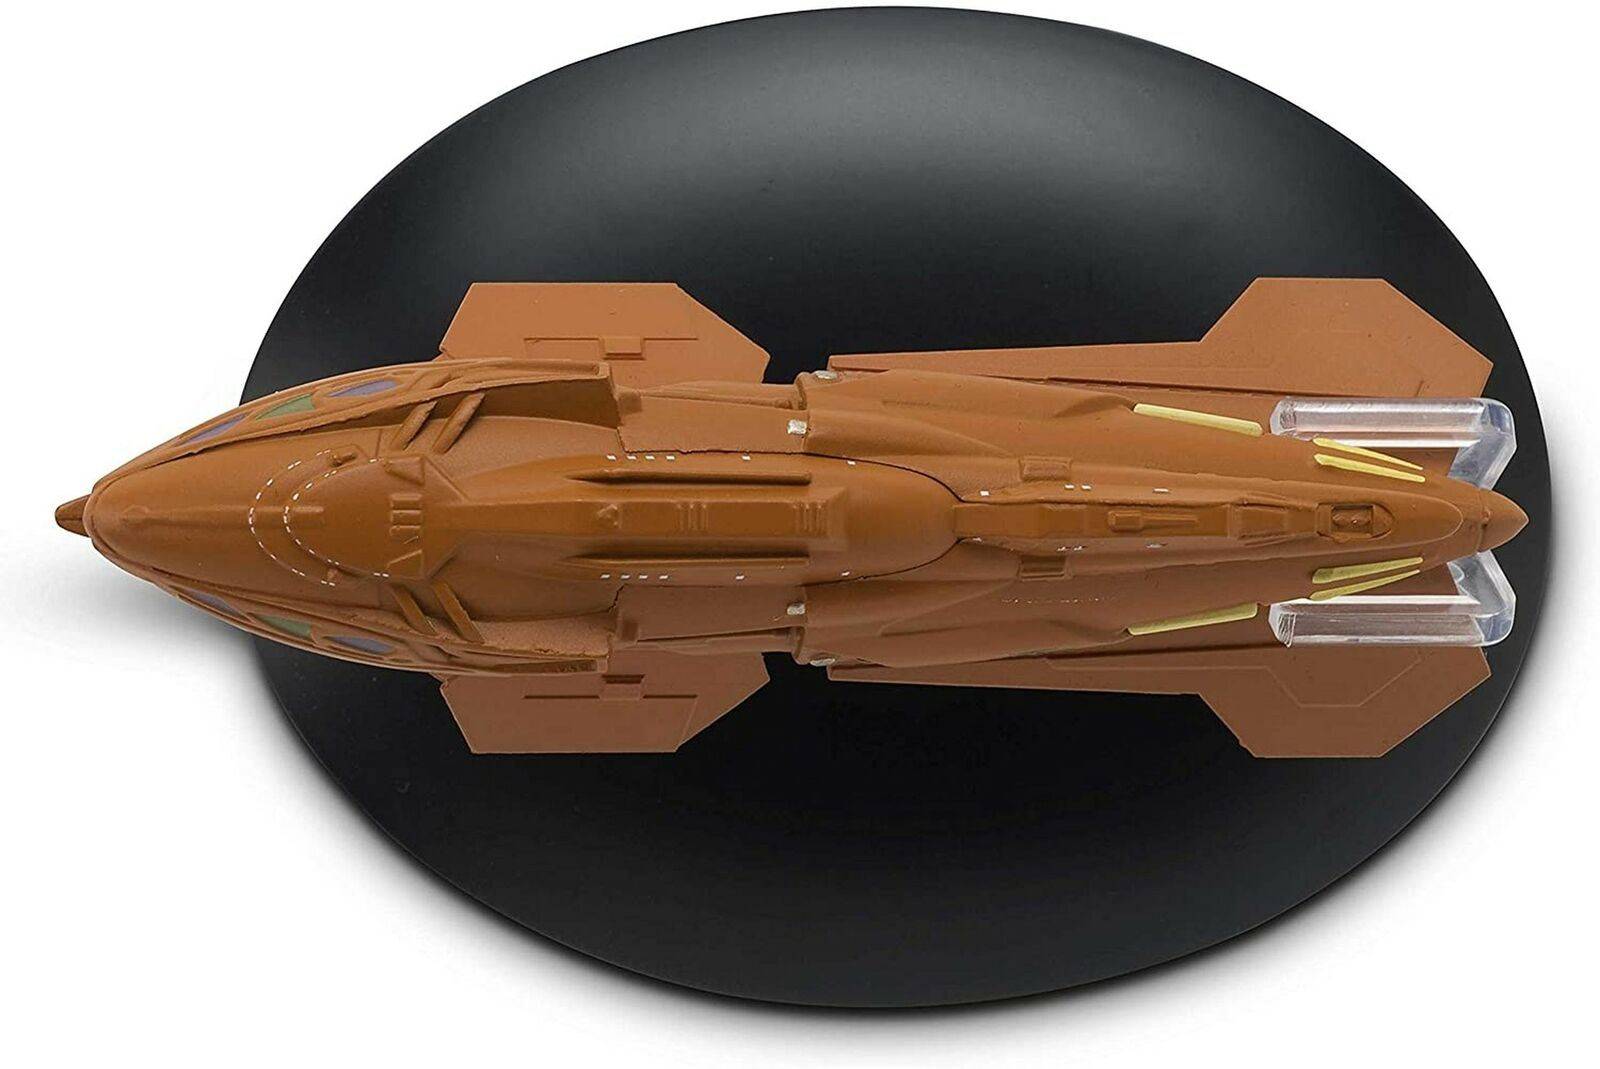 #106 Kazon Raider Starship Die-Cast Model (Eaglemoss / Star Trek)